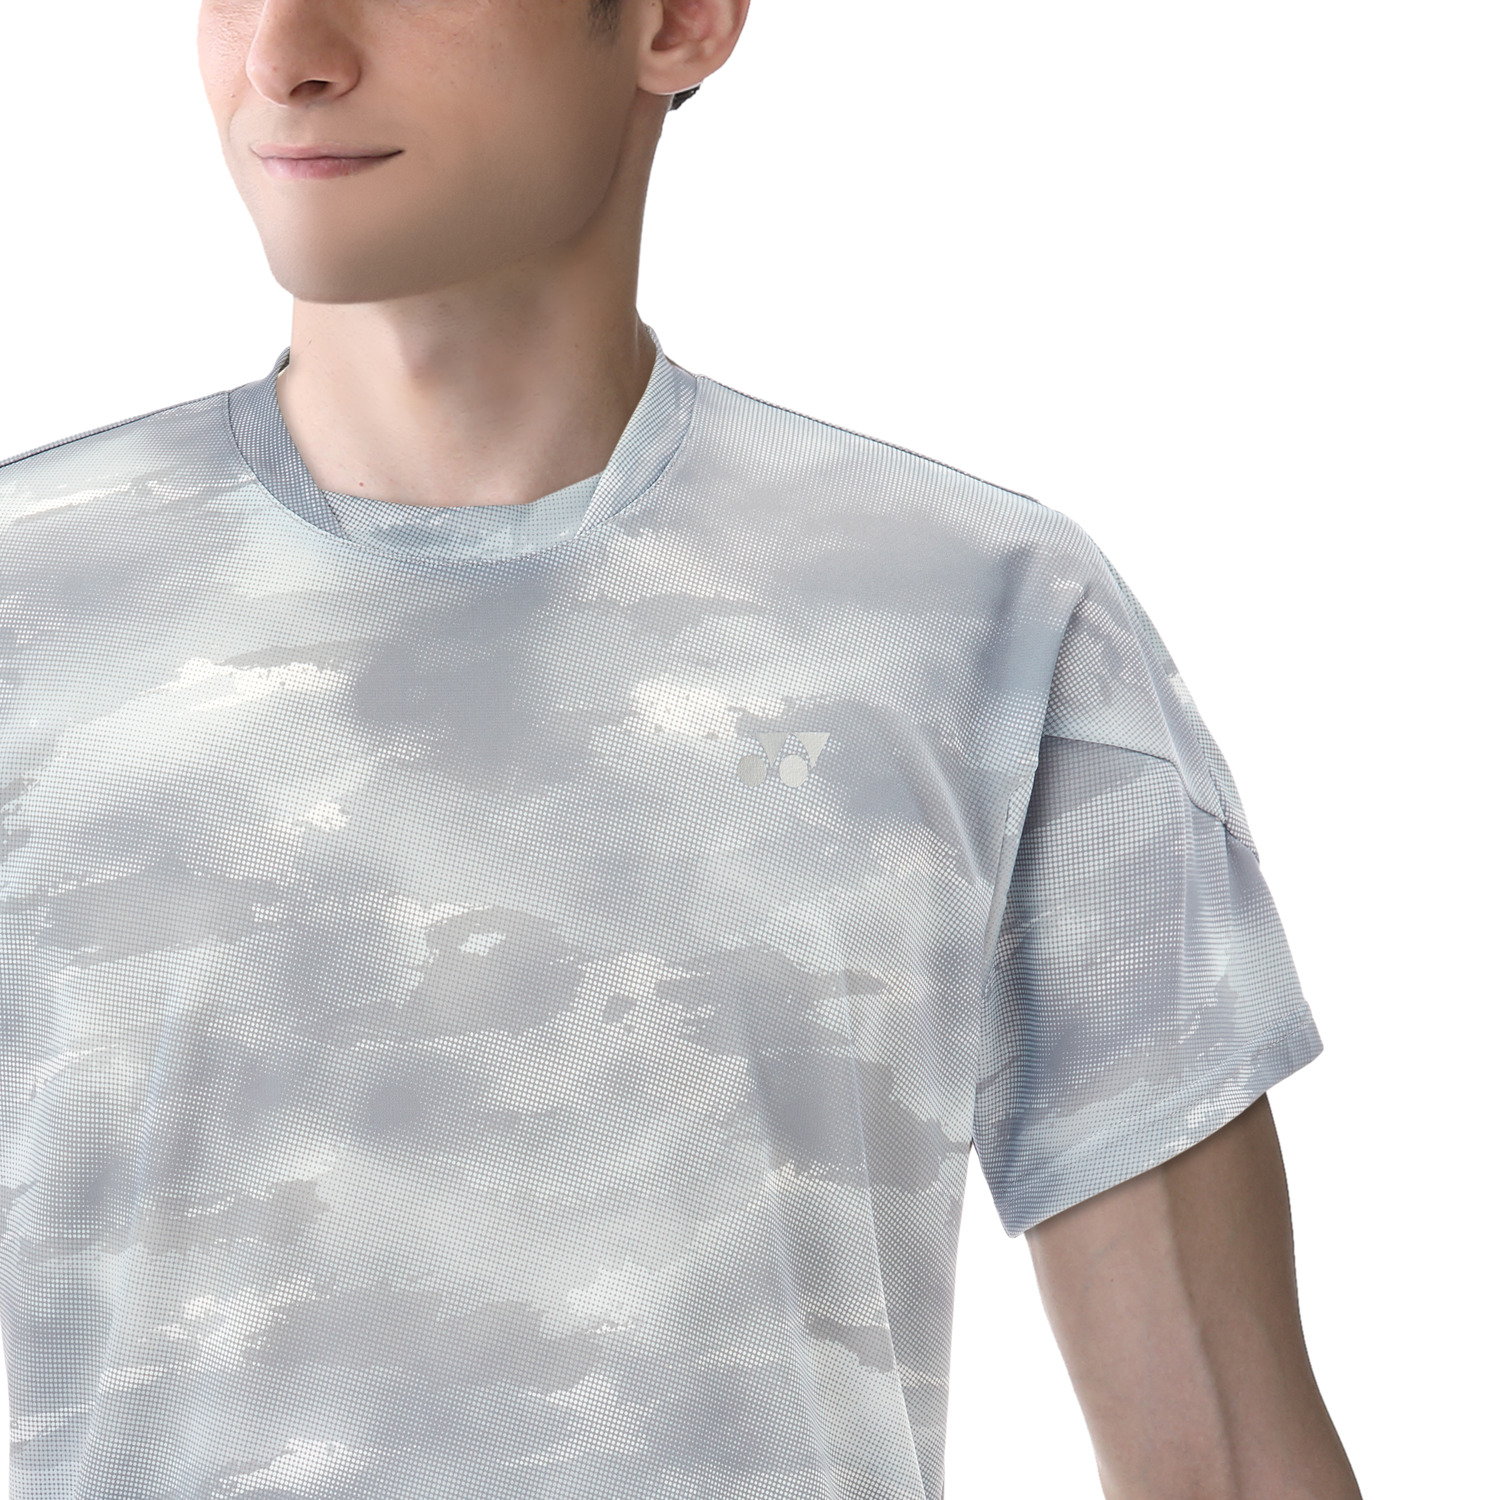 ユニゲームシャツ（フィットスタイル）. 10534 期間限定販売4/10 24時 